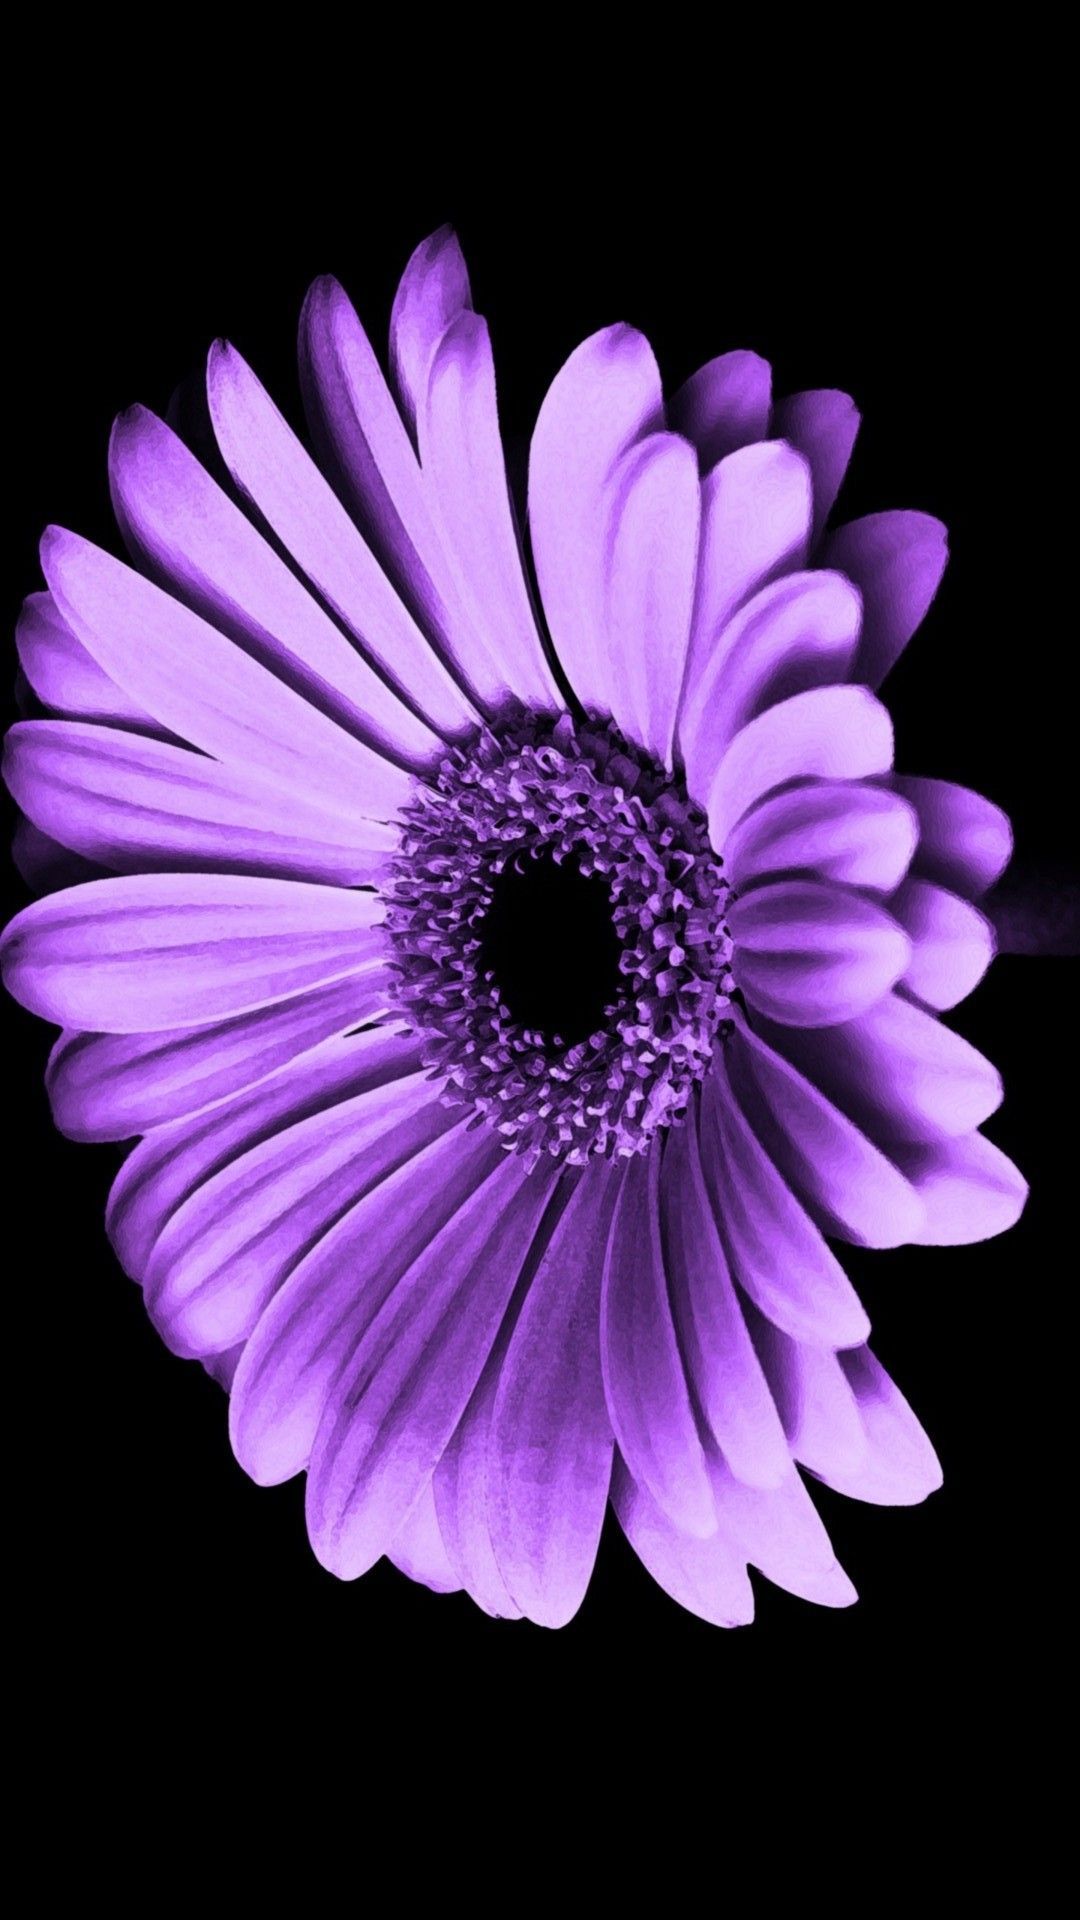 Purple Flower iPhone Wallpaper On